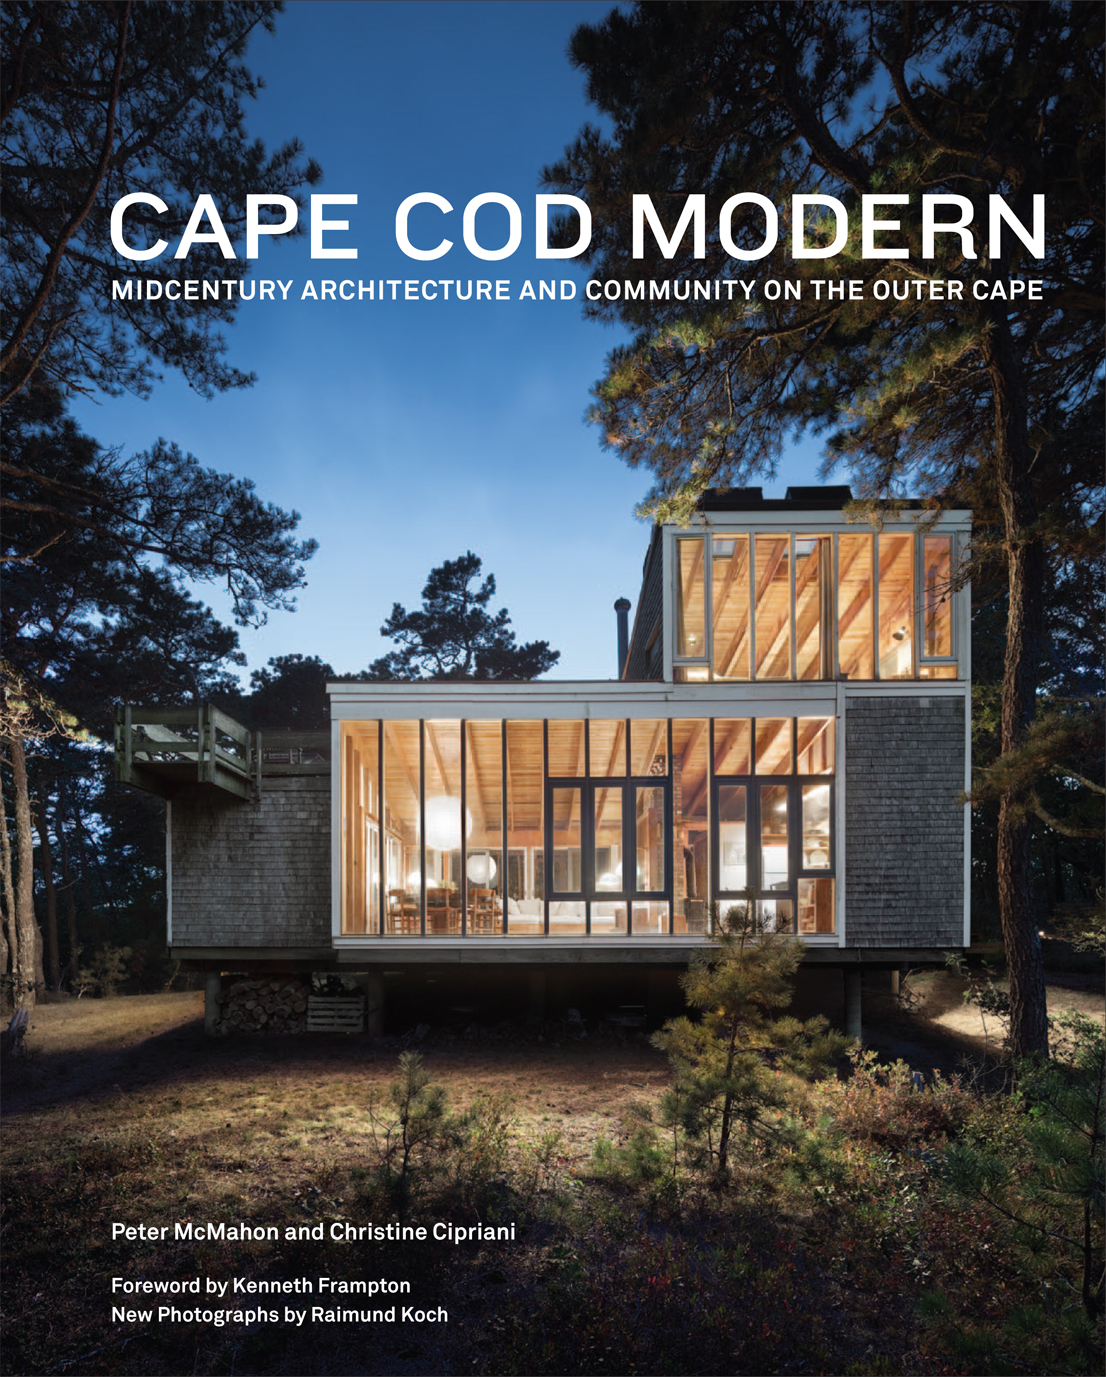 Cape Cod Modern, Pubblicato da Metropolis Books. Le fotografie di Raimund Koch sono accompagnate dai testi di Peter McMahon e Christine Cipriani.